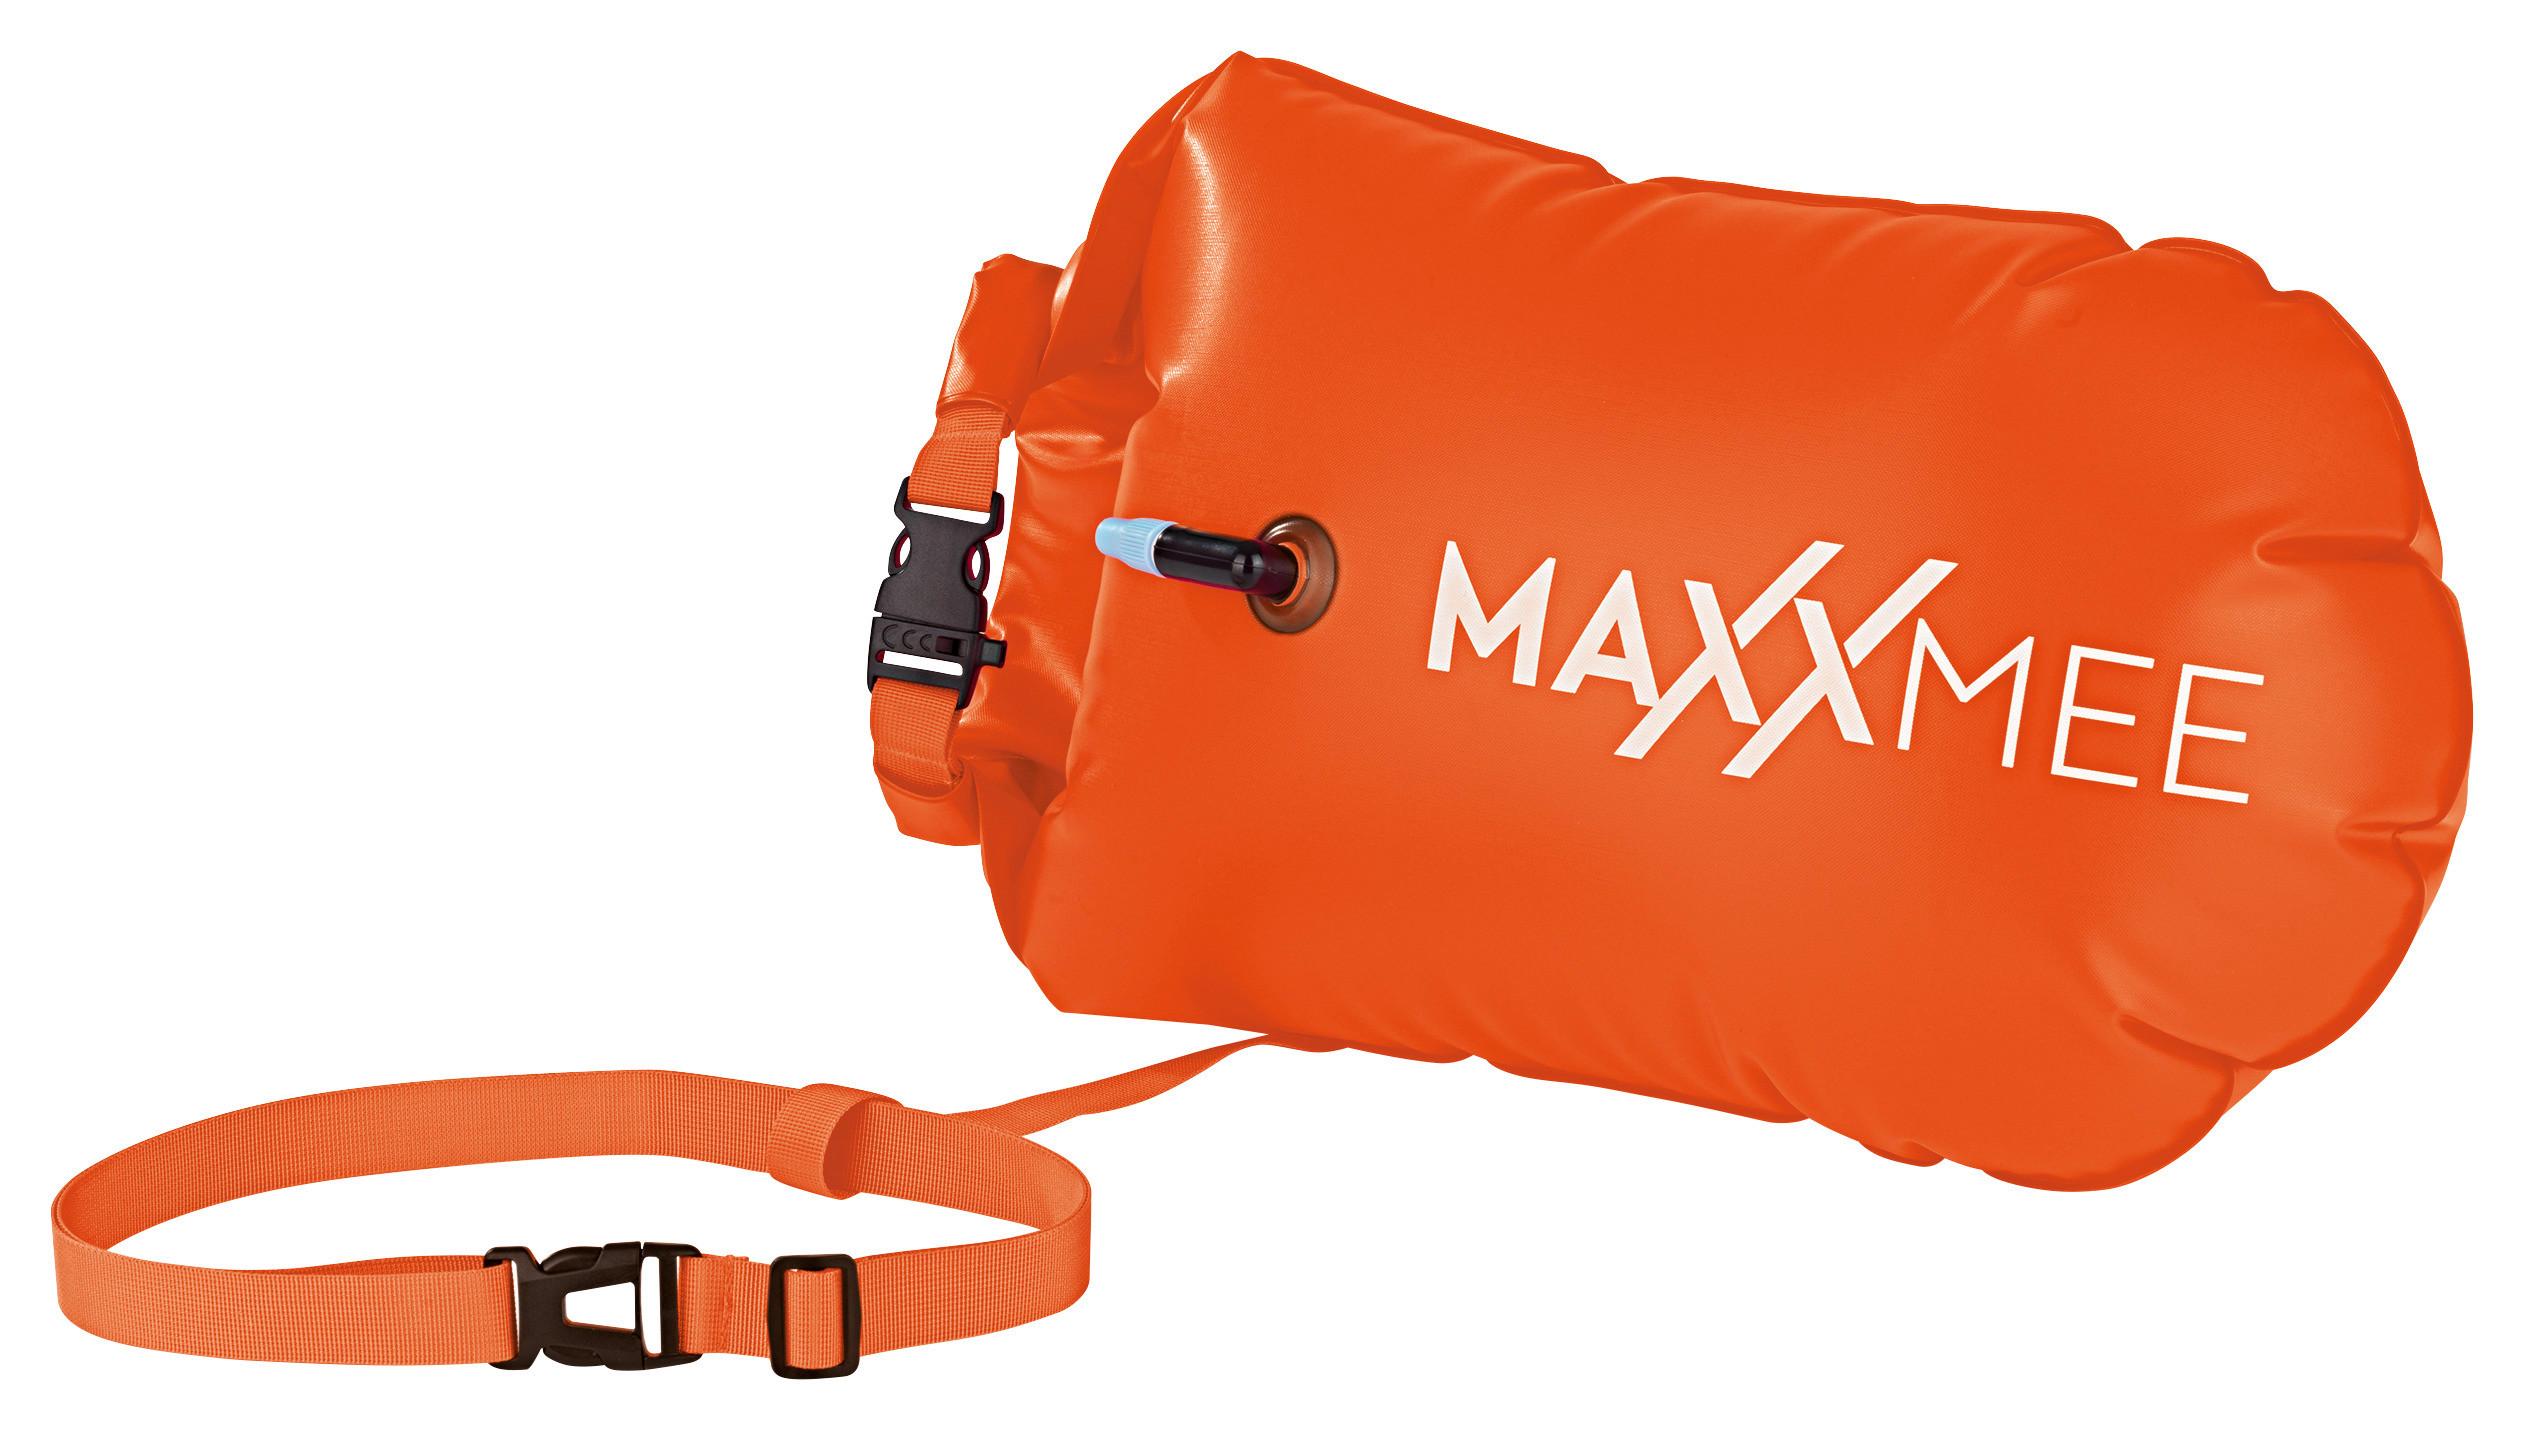 Schwimmkissen Maxxmee Schwimmboje Orange - Orange, Basics, Kunststoff (37,5/72cm) - TV - Unser Original